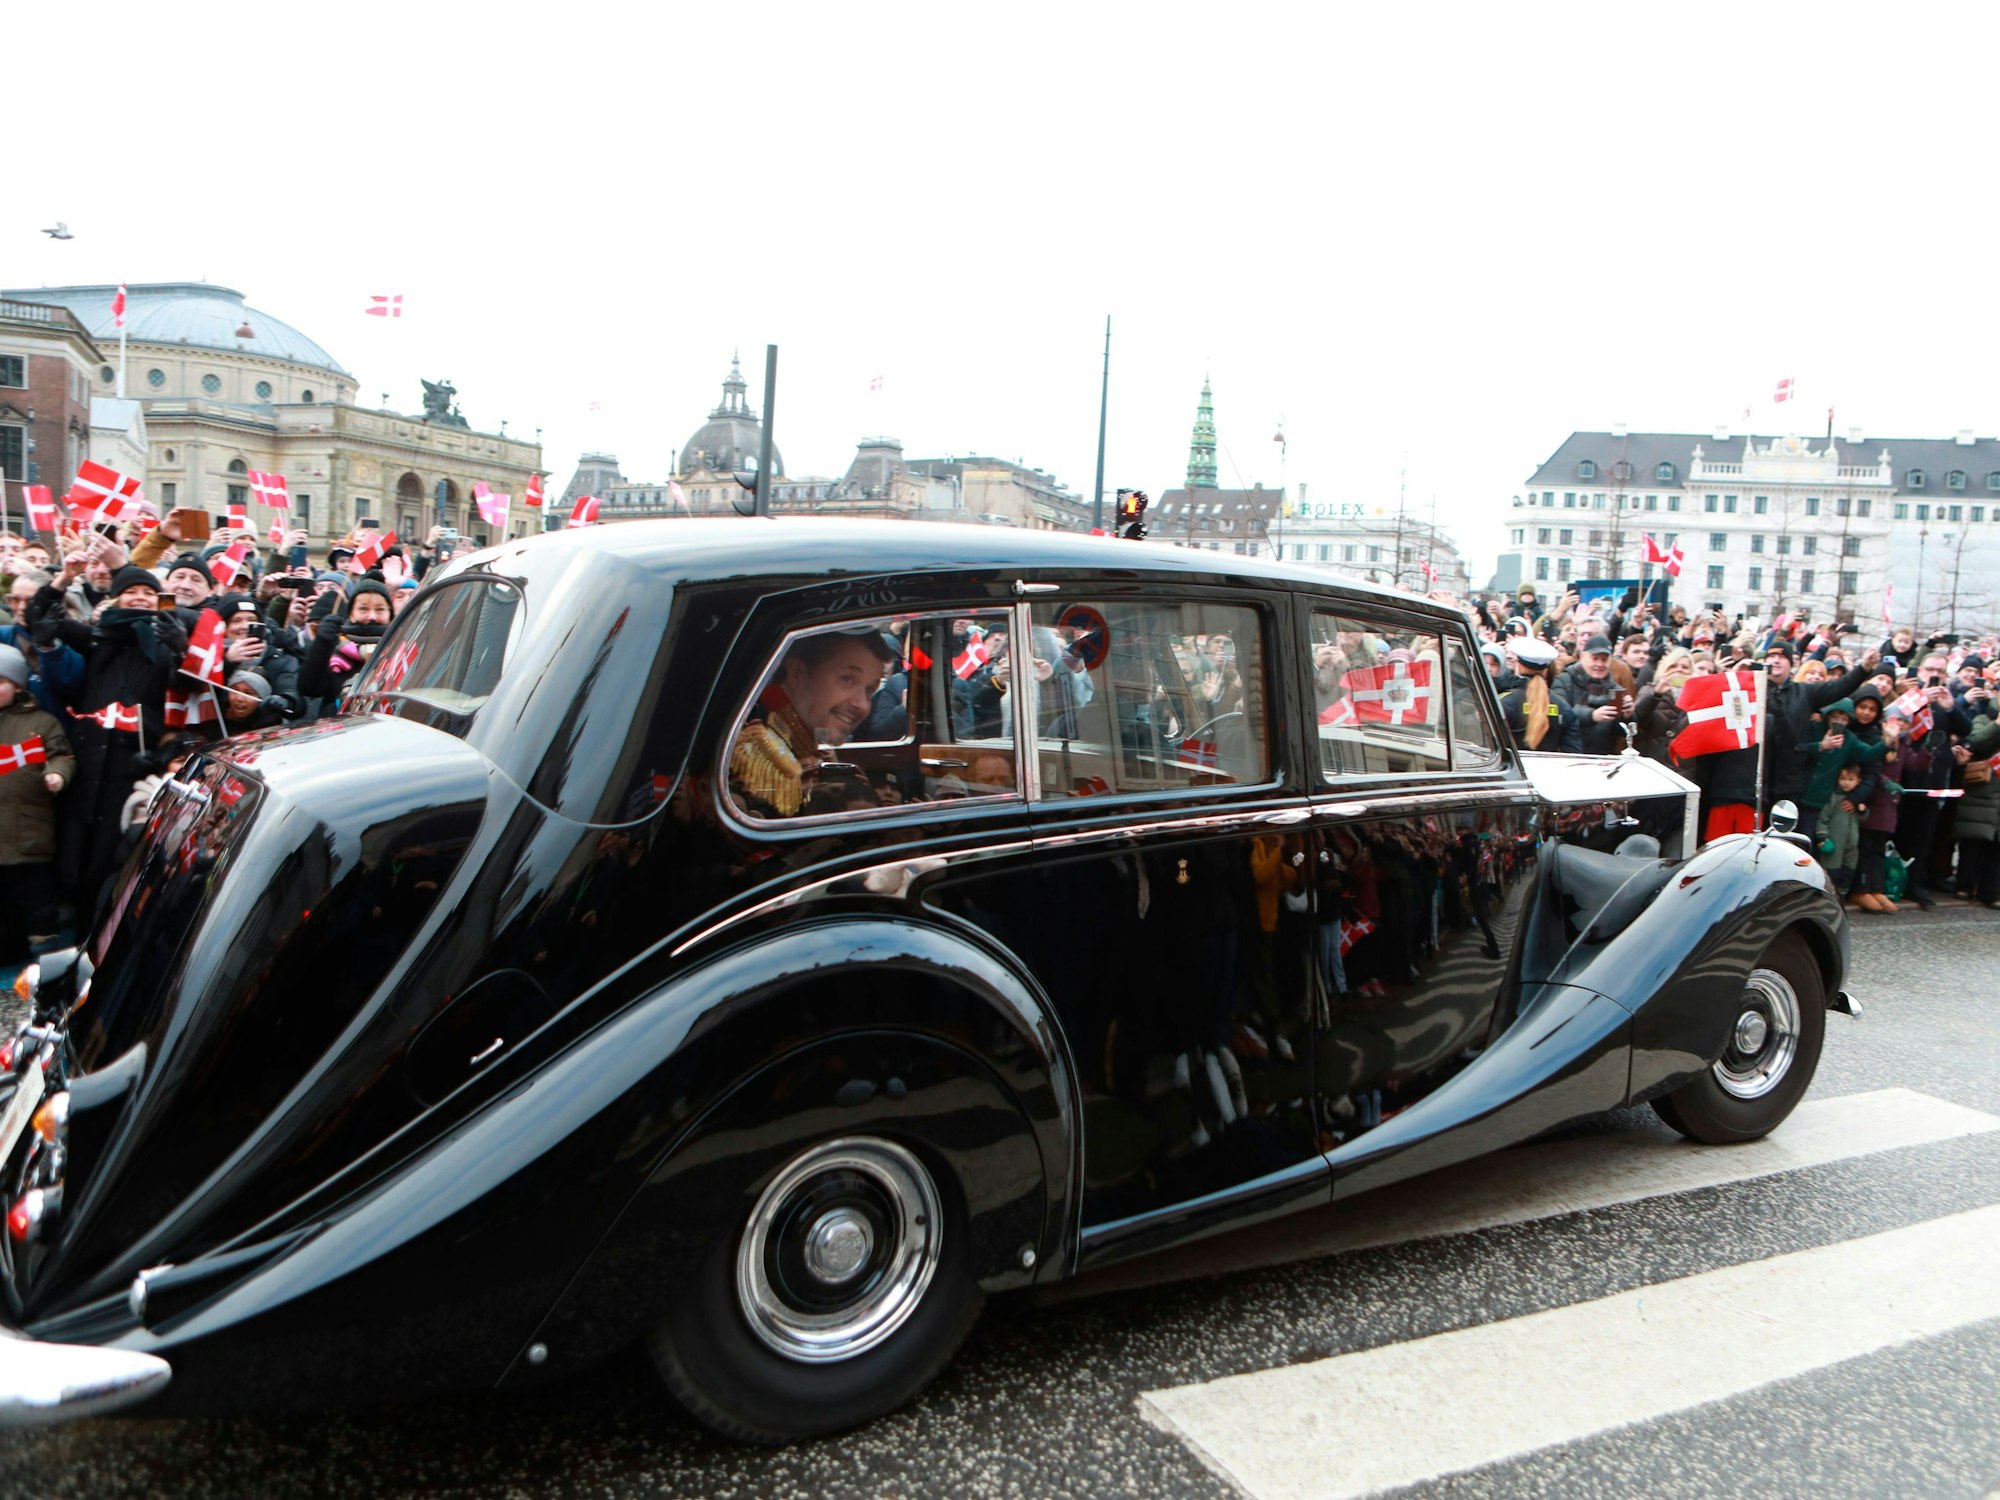 Kronprinz Frederik im Auto "Krone 1" begrüßt die Fans, während der Fahrt von Schloss Amalienborg zum Schloss Christiansborg.